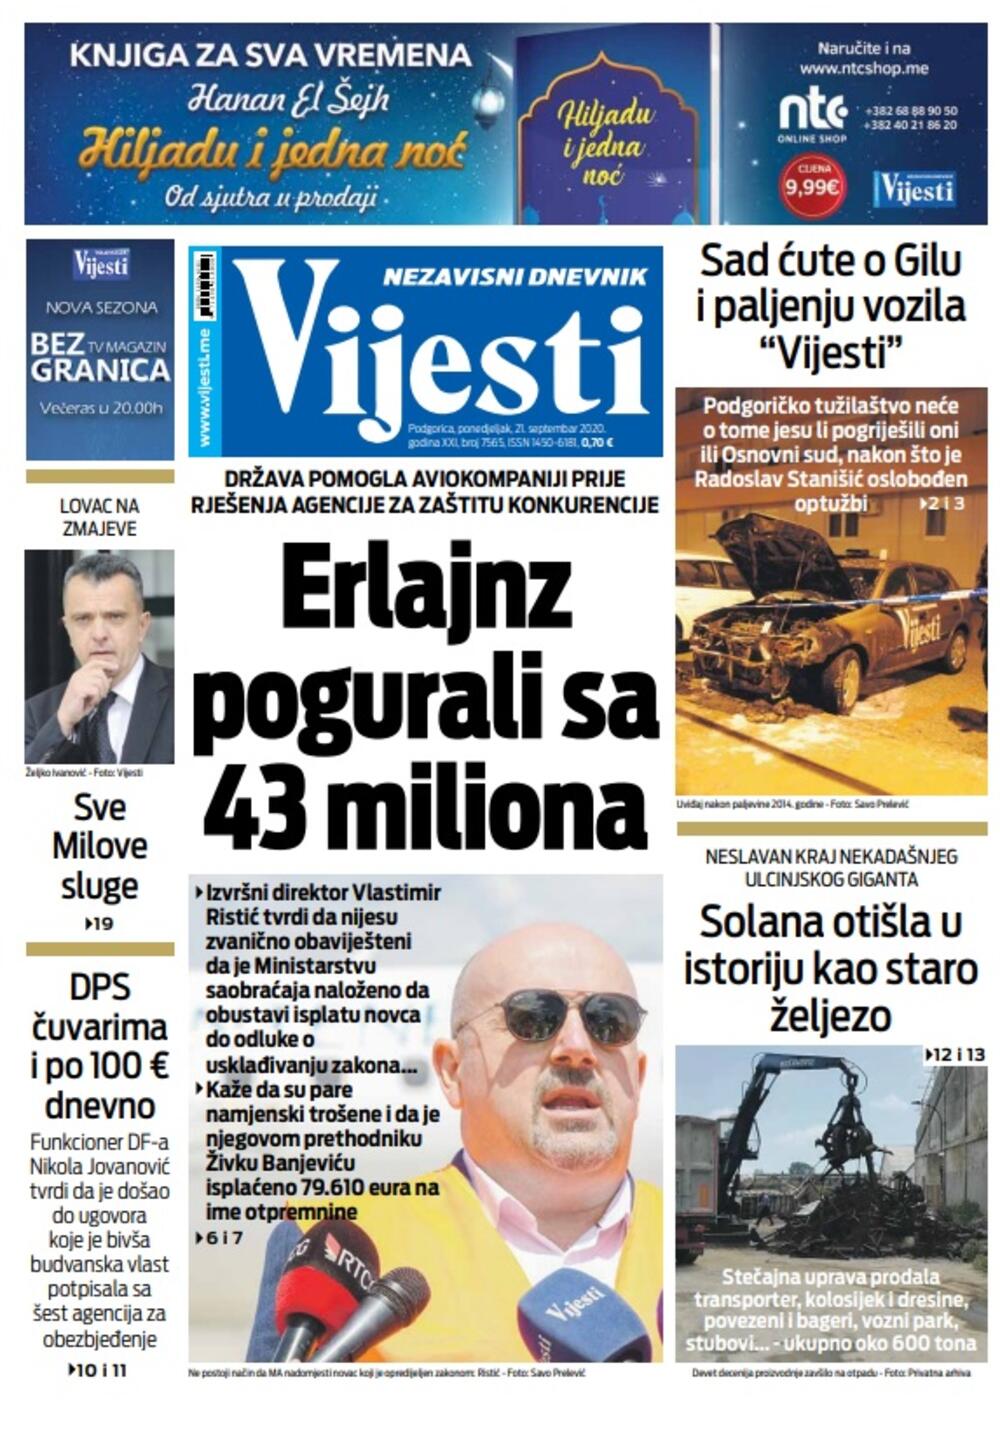 Naslovna strana "Vijesti" za ponedjeljak 21. septembar 2020. godine, Foto: Vijesti